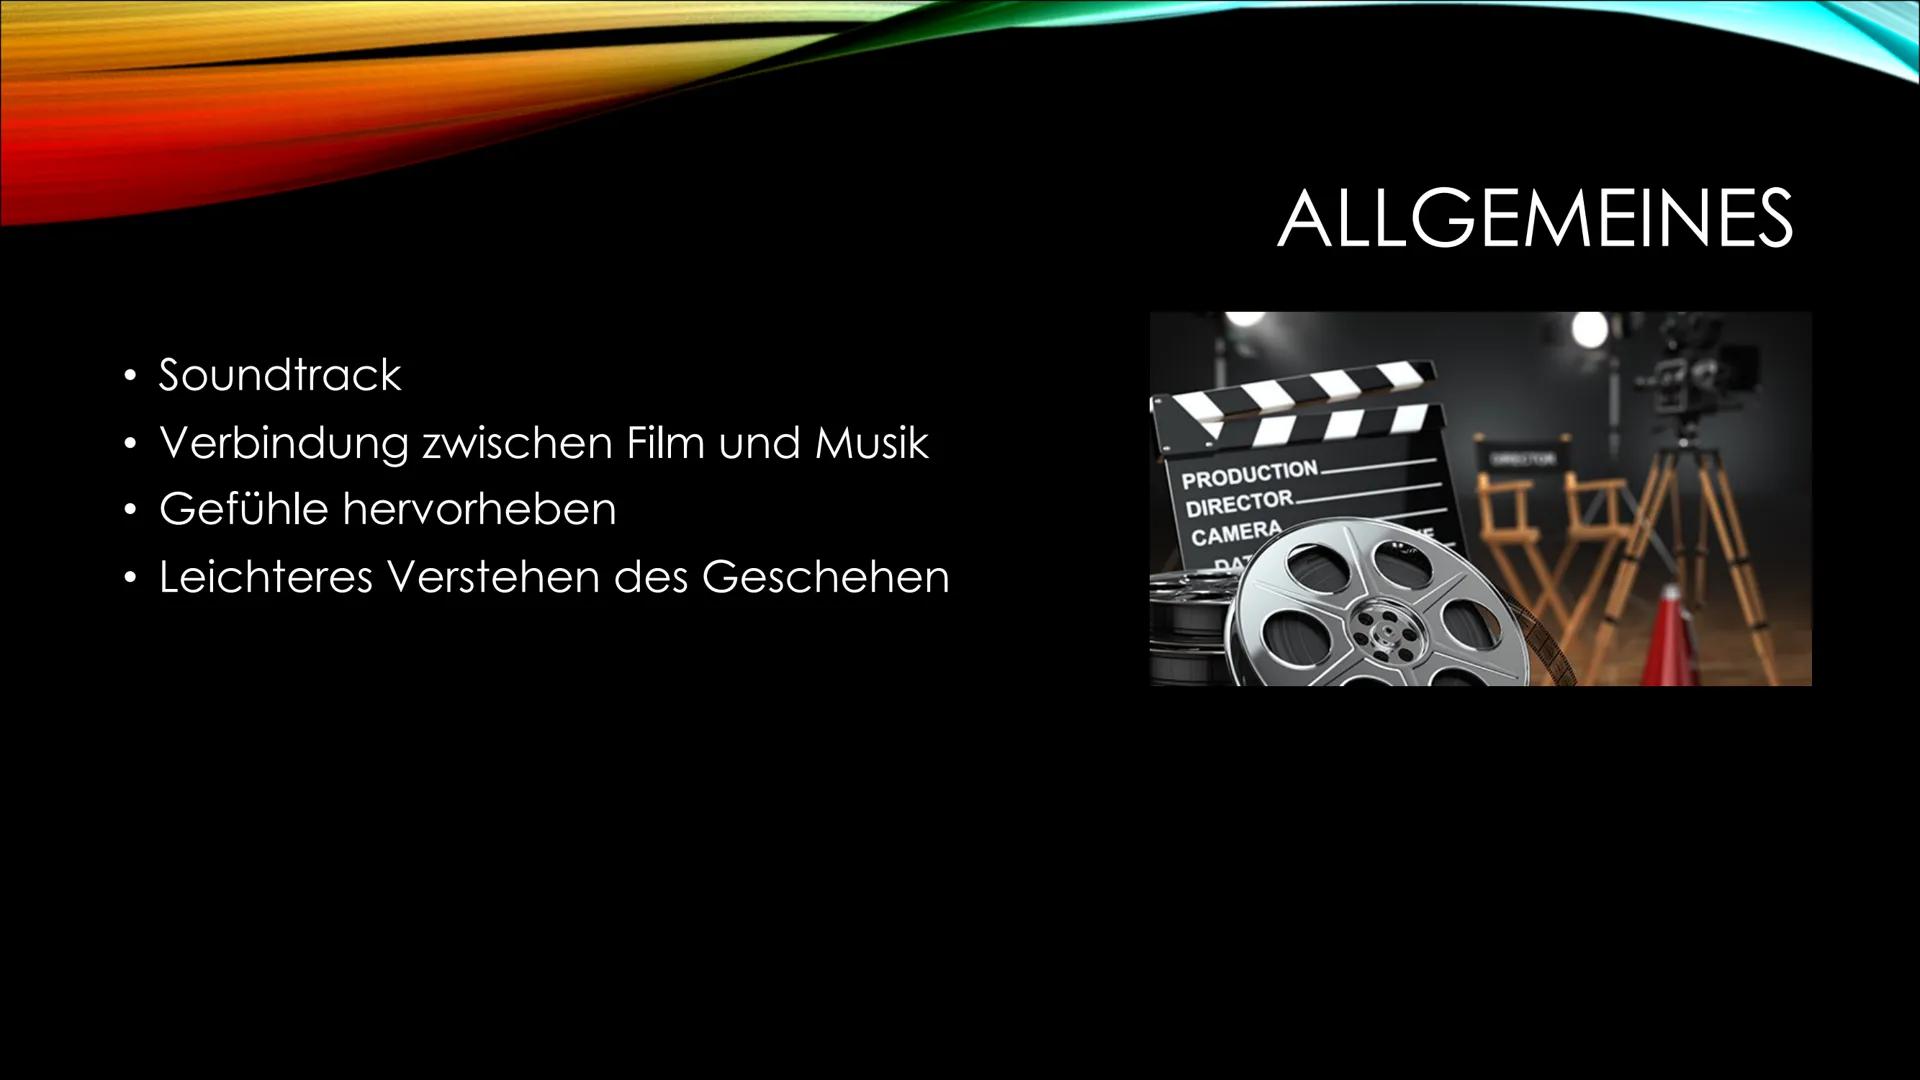 PRODUCTION.
DIRECTOR.
CAMERA
Filmmusik
24 కా రాజ్యాం
production
director
mera
scene : FILMMUSIK Allgemeines
Geschichte
Techniken
Wirkung von